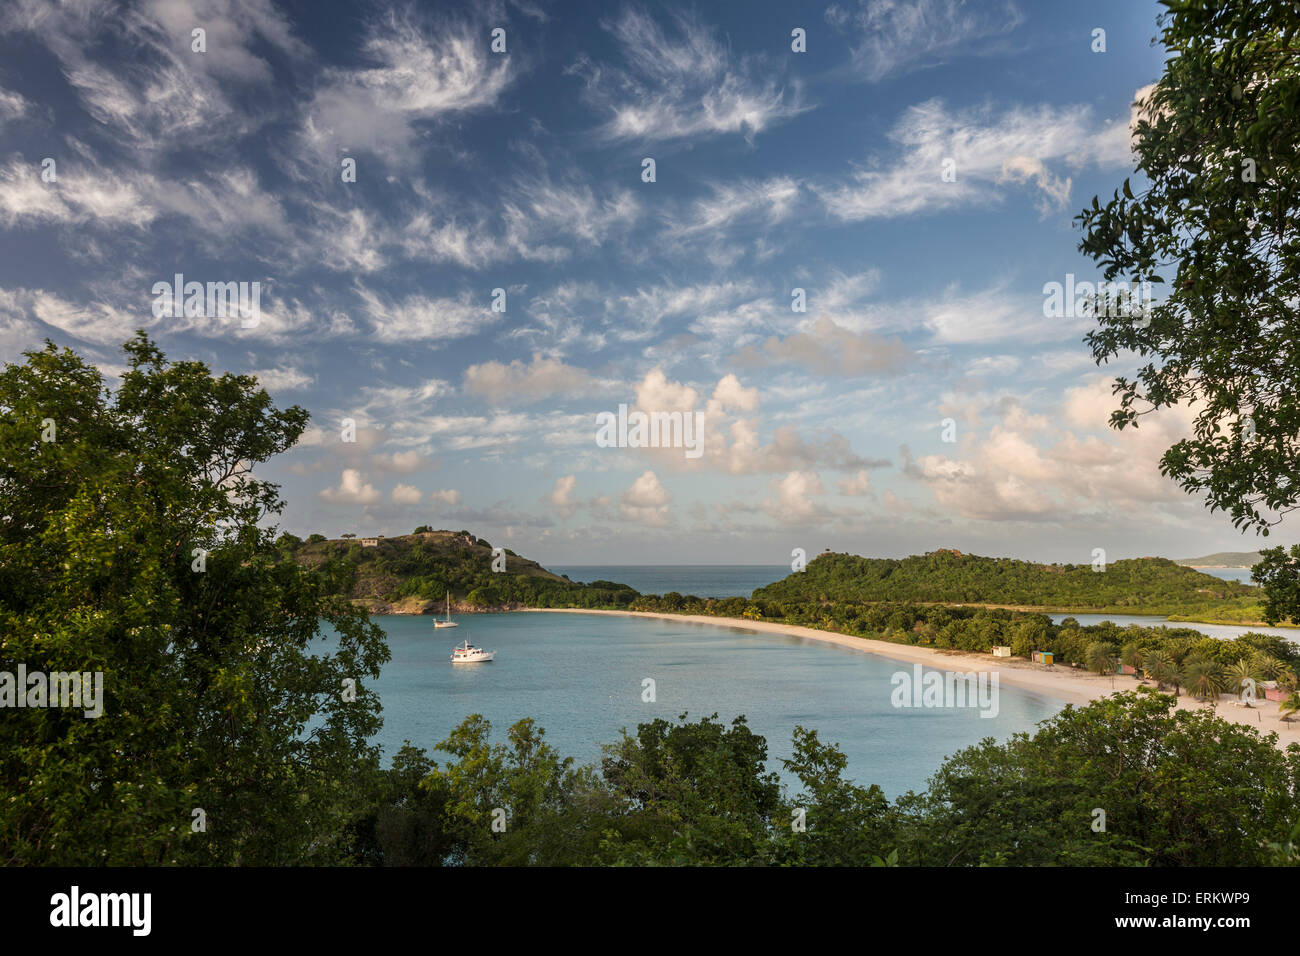 Les nuages sont éclairés par le soleil couchant sur la baie profonde une bande de sable caché par une végétation luxuriante, Antigua, Iles sous le vent Banque D'Images